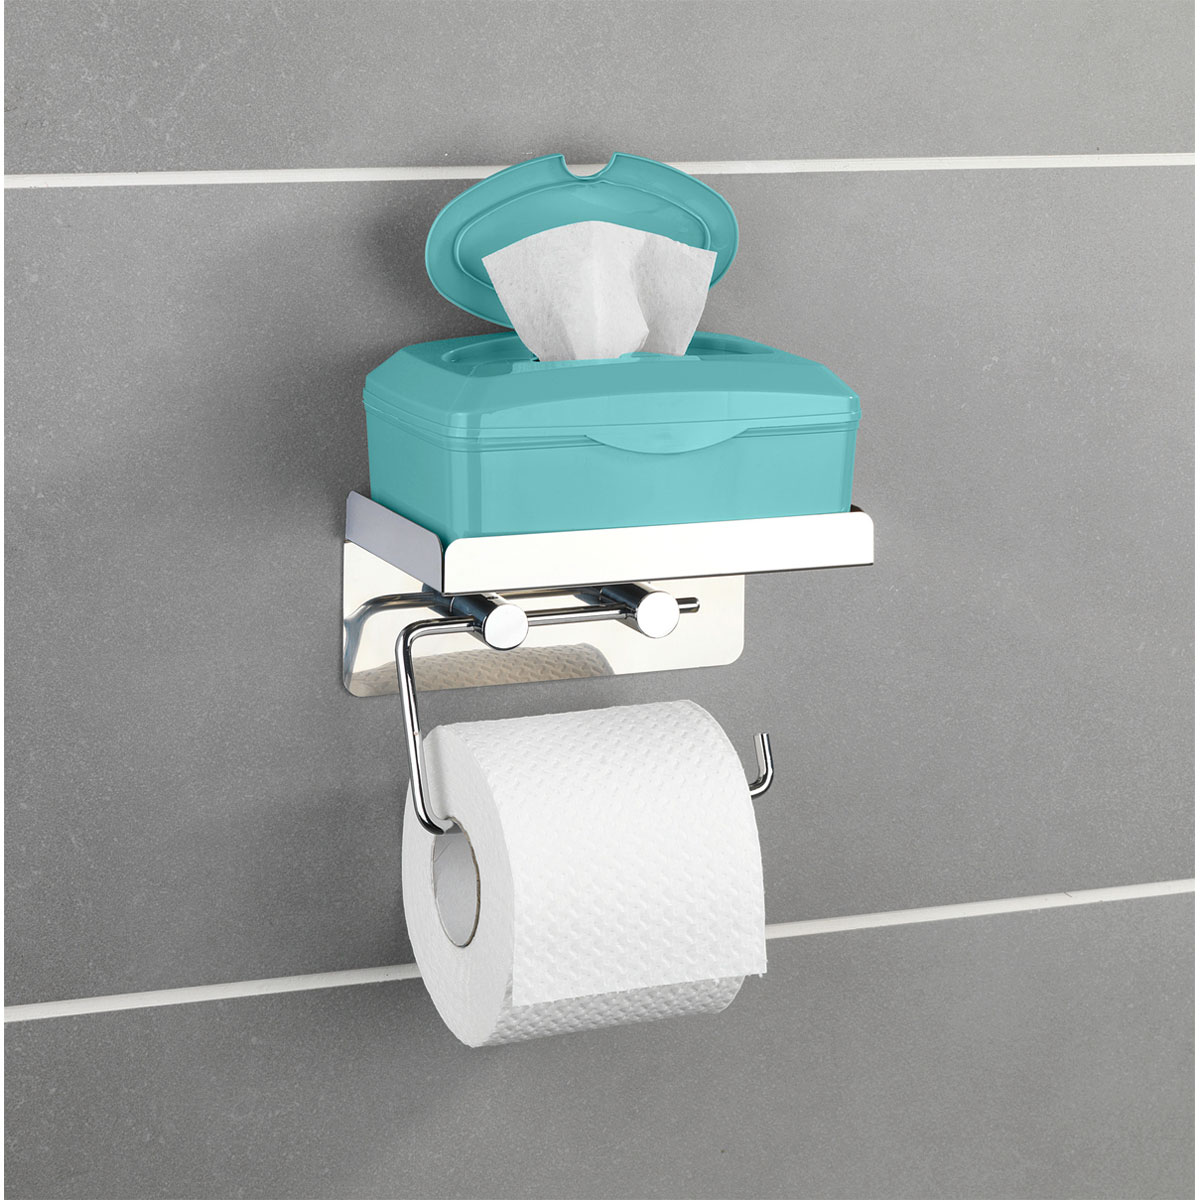 rostfrei | Wenko Toilettenpapierhalter Edelstahl 2 514880 1 in